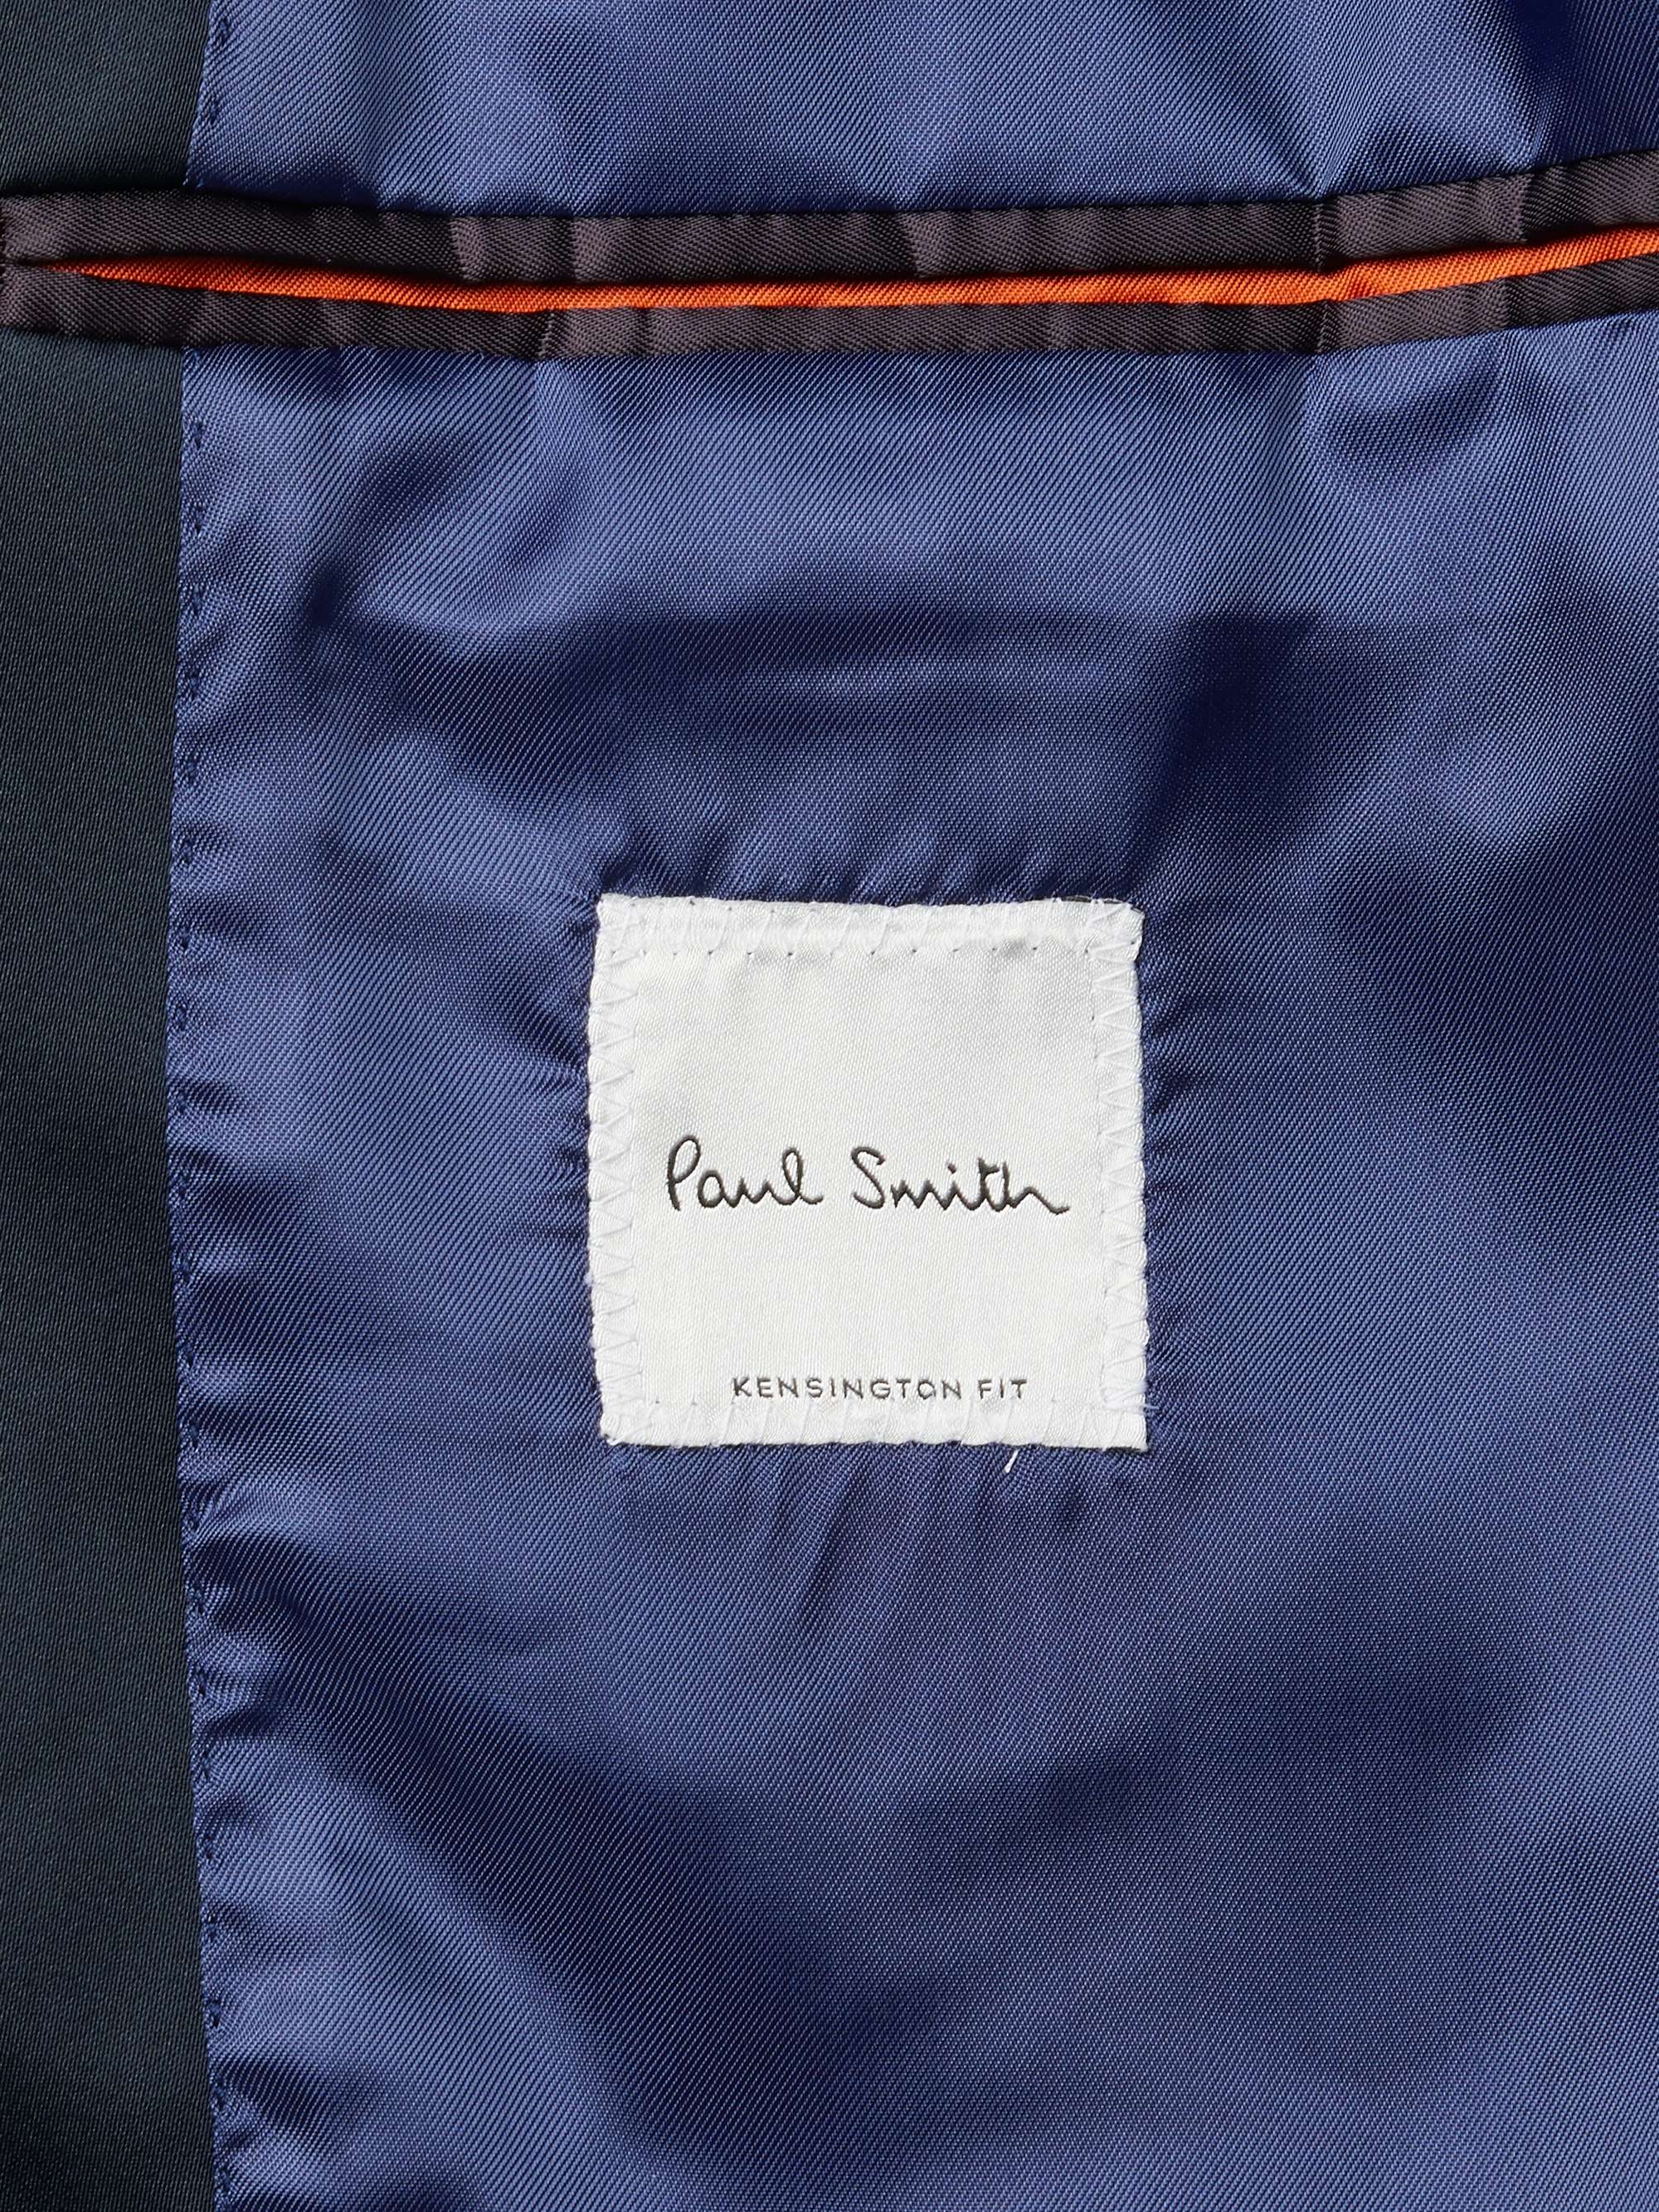 PAUL SMITH Slim-Fit Satin-Trimmed Cotton-Velvet Tuxedo Jacket for Men ...